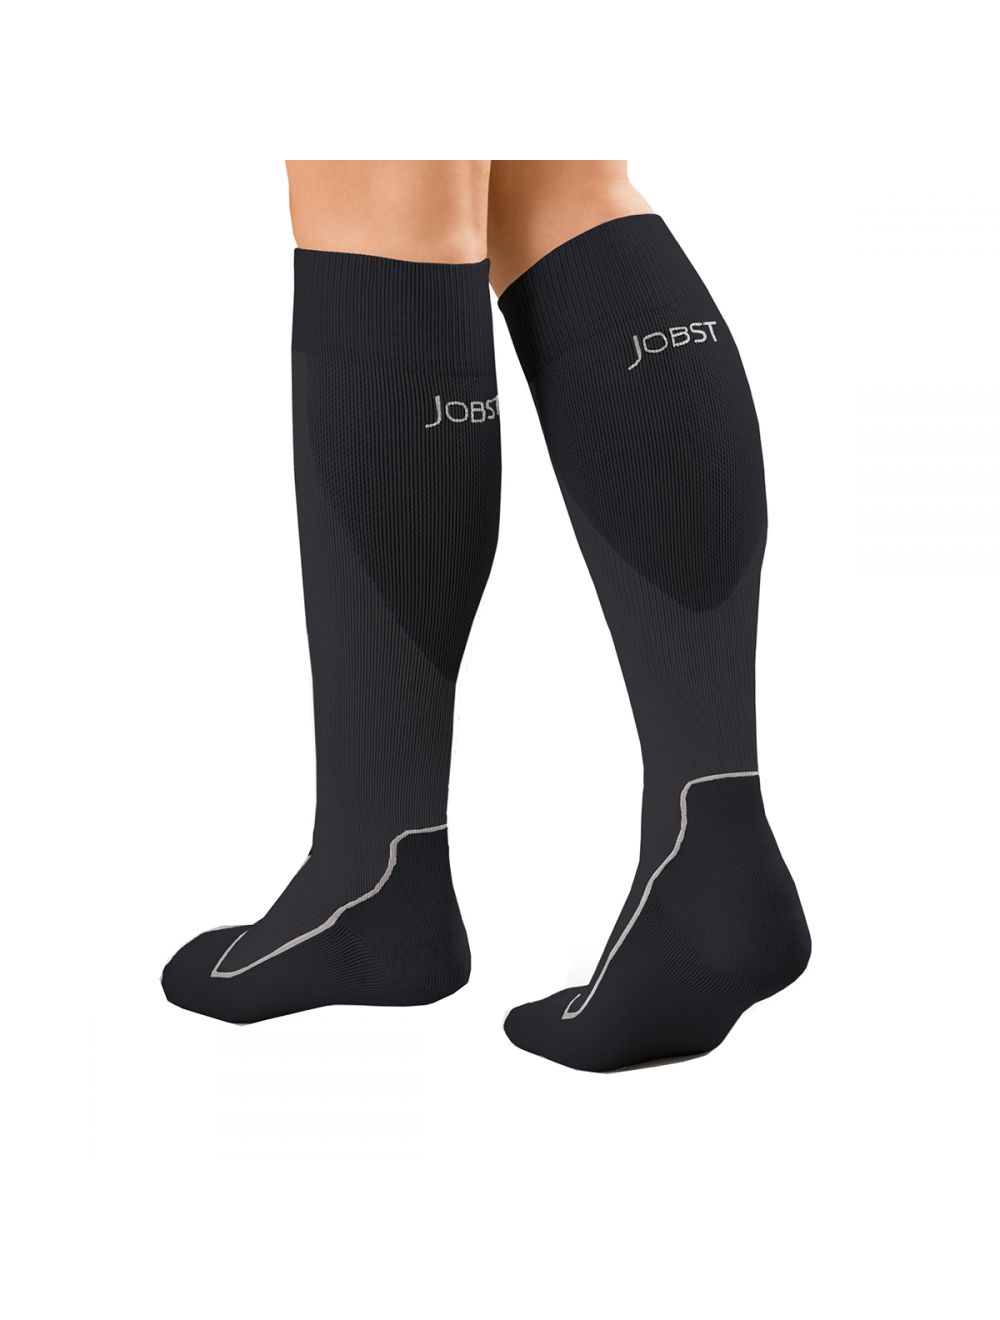 Jobst Unisex Sport Knee High 15-20mmHg